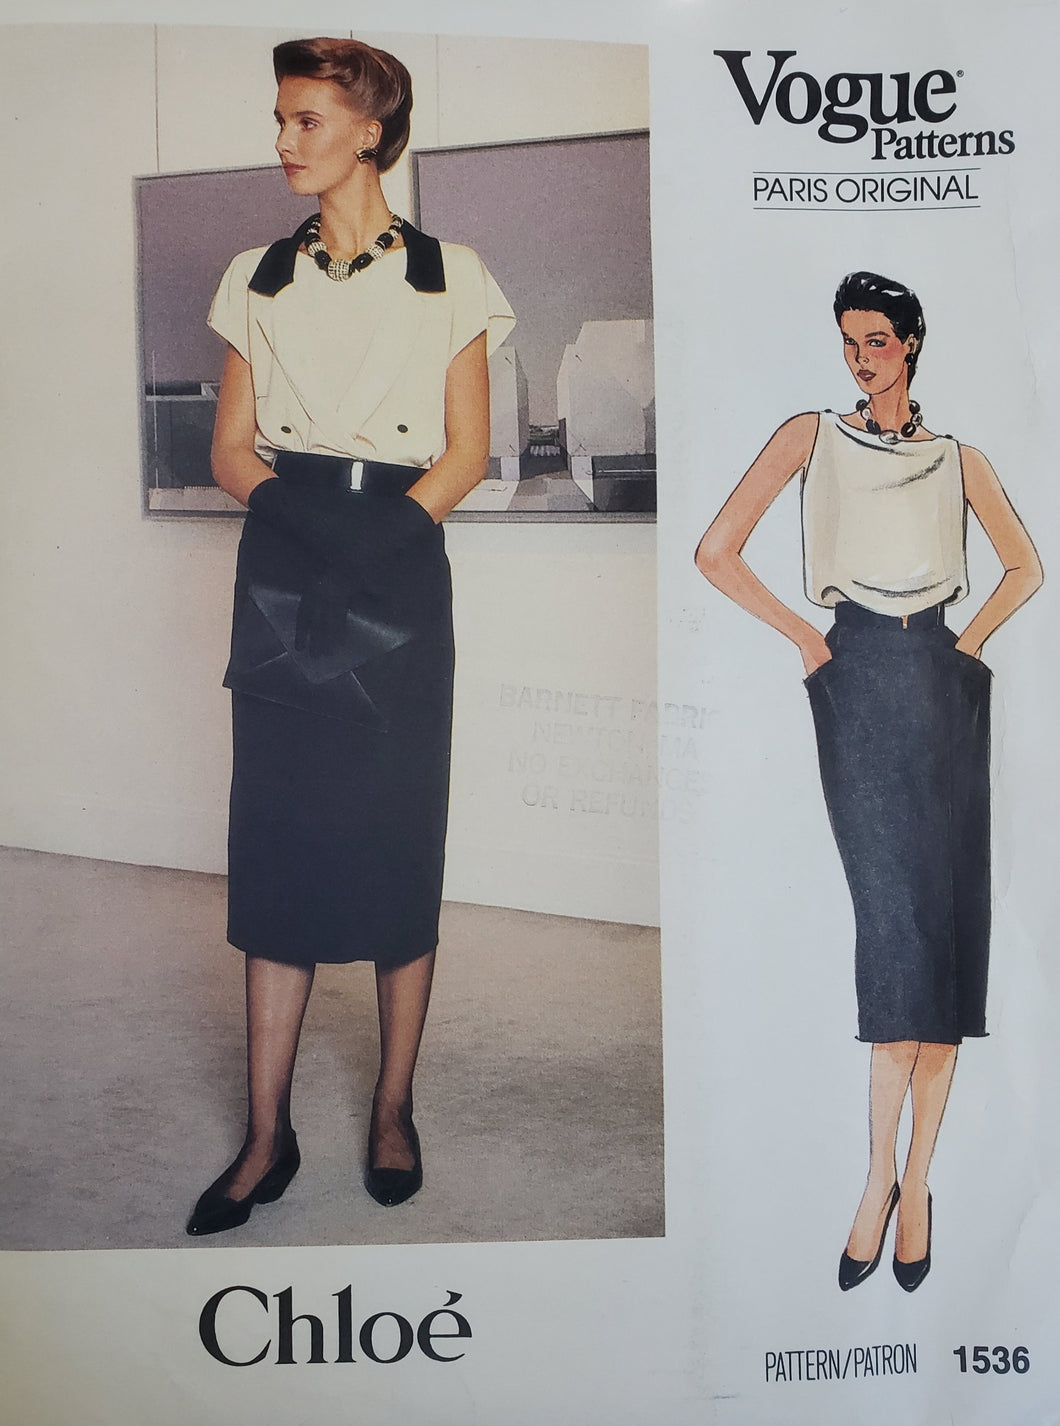 Vintage Vogue Pattern 1536 UNCUT Paris Original Chloe, Misses Skirt, Top and Jacket, Size 8